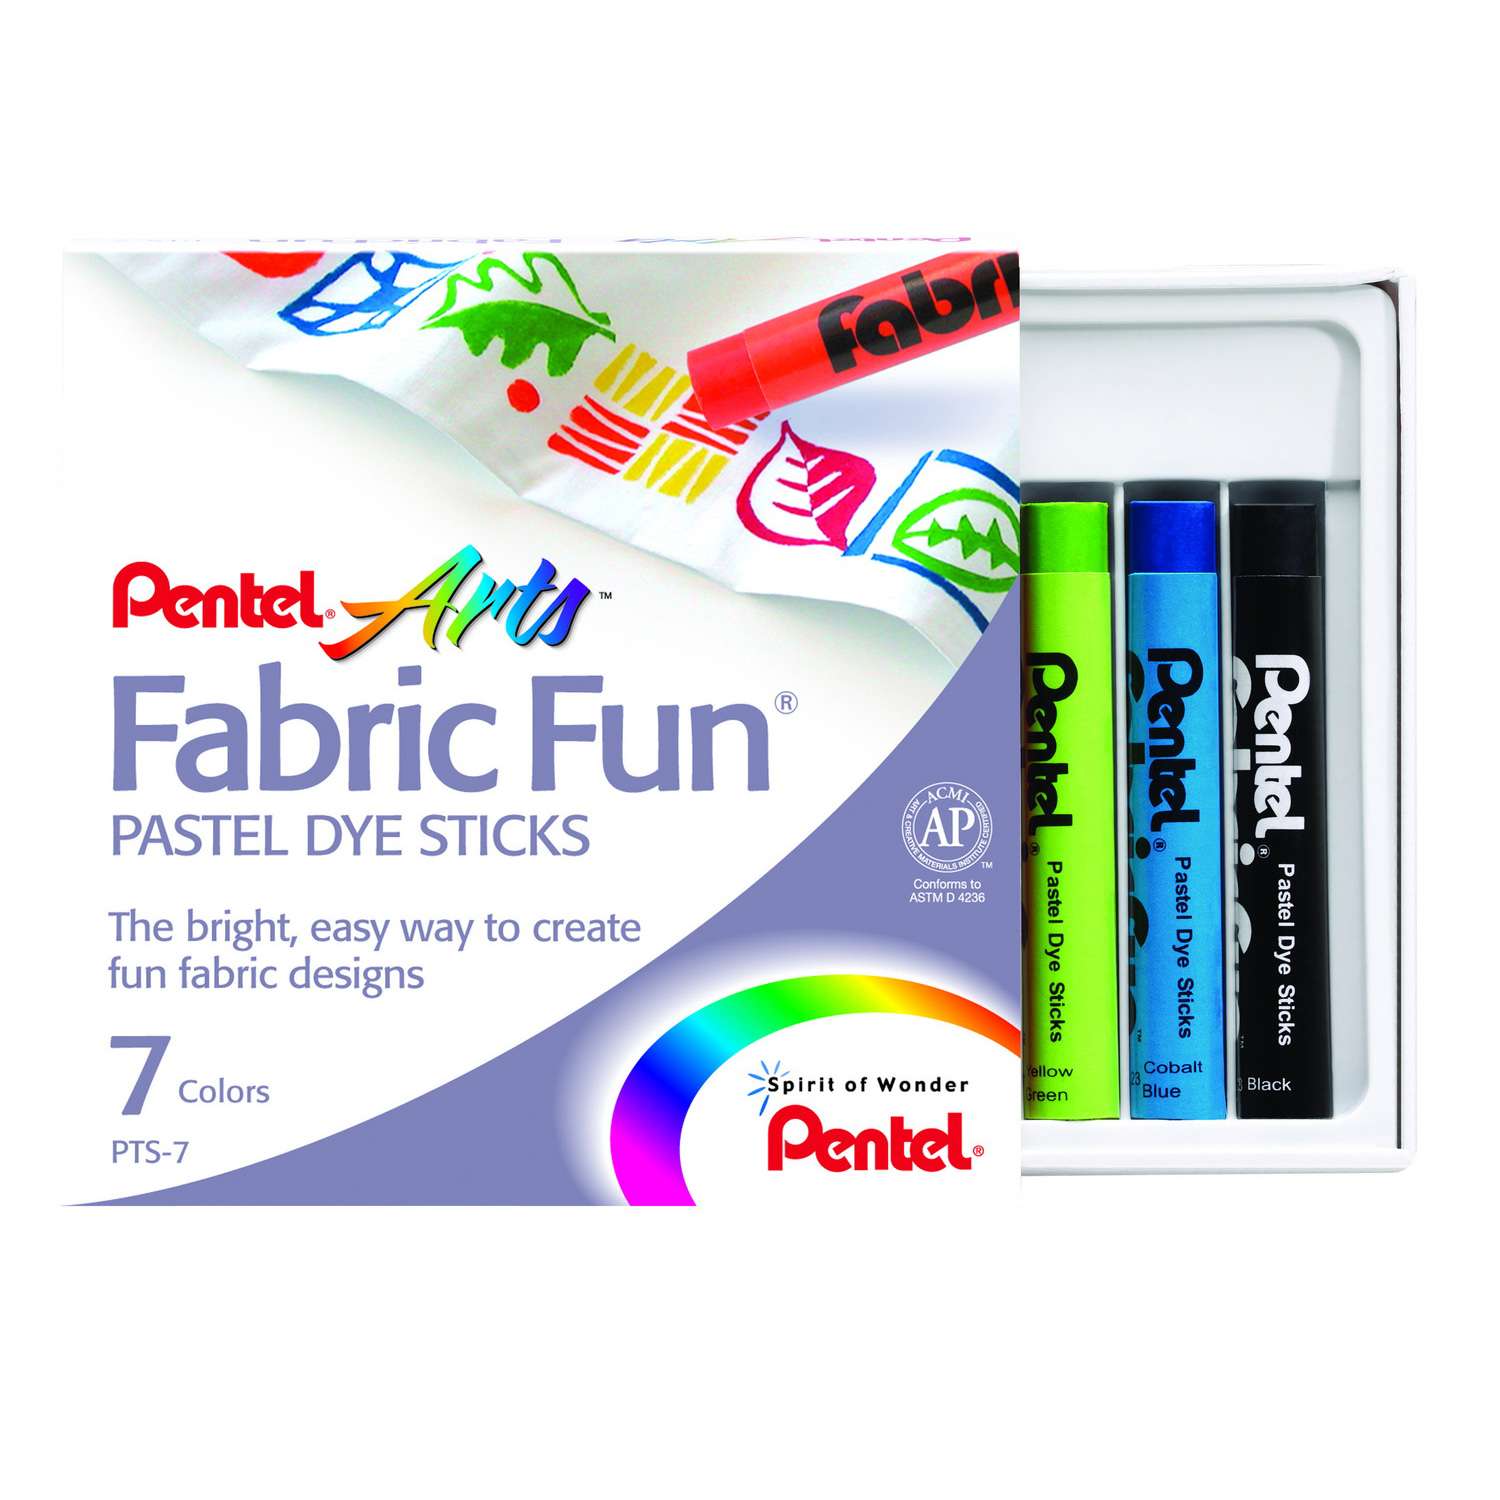 Пастель  Pentel для ткани FabricFun Pastels 7 штук - фото 1